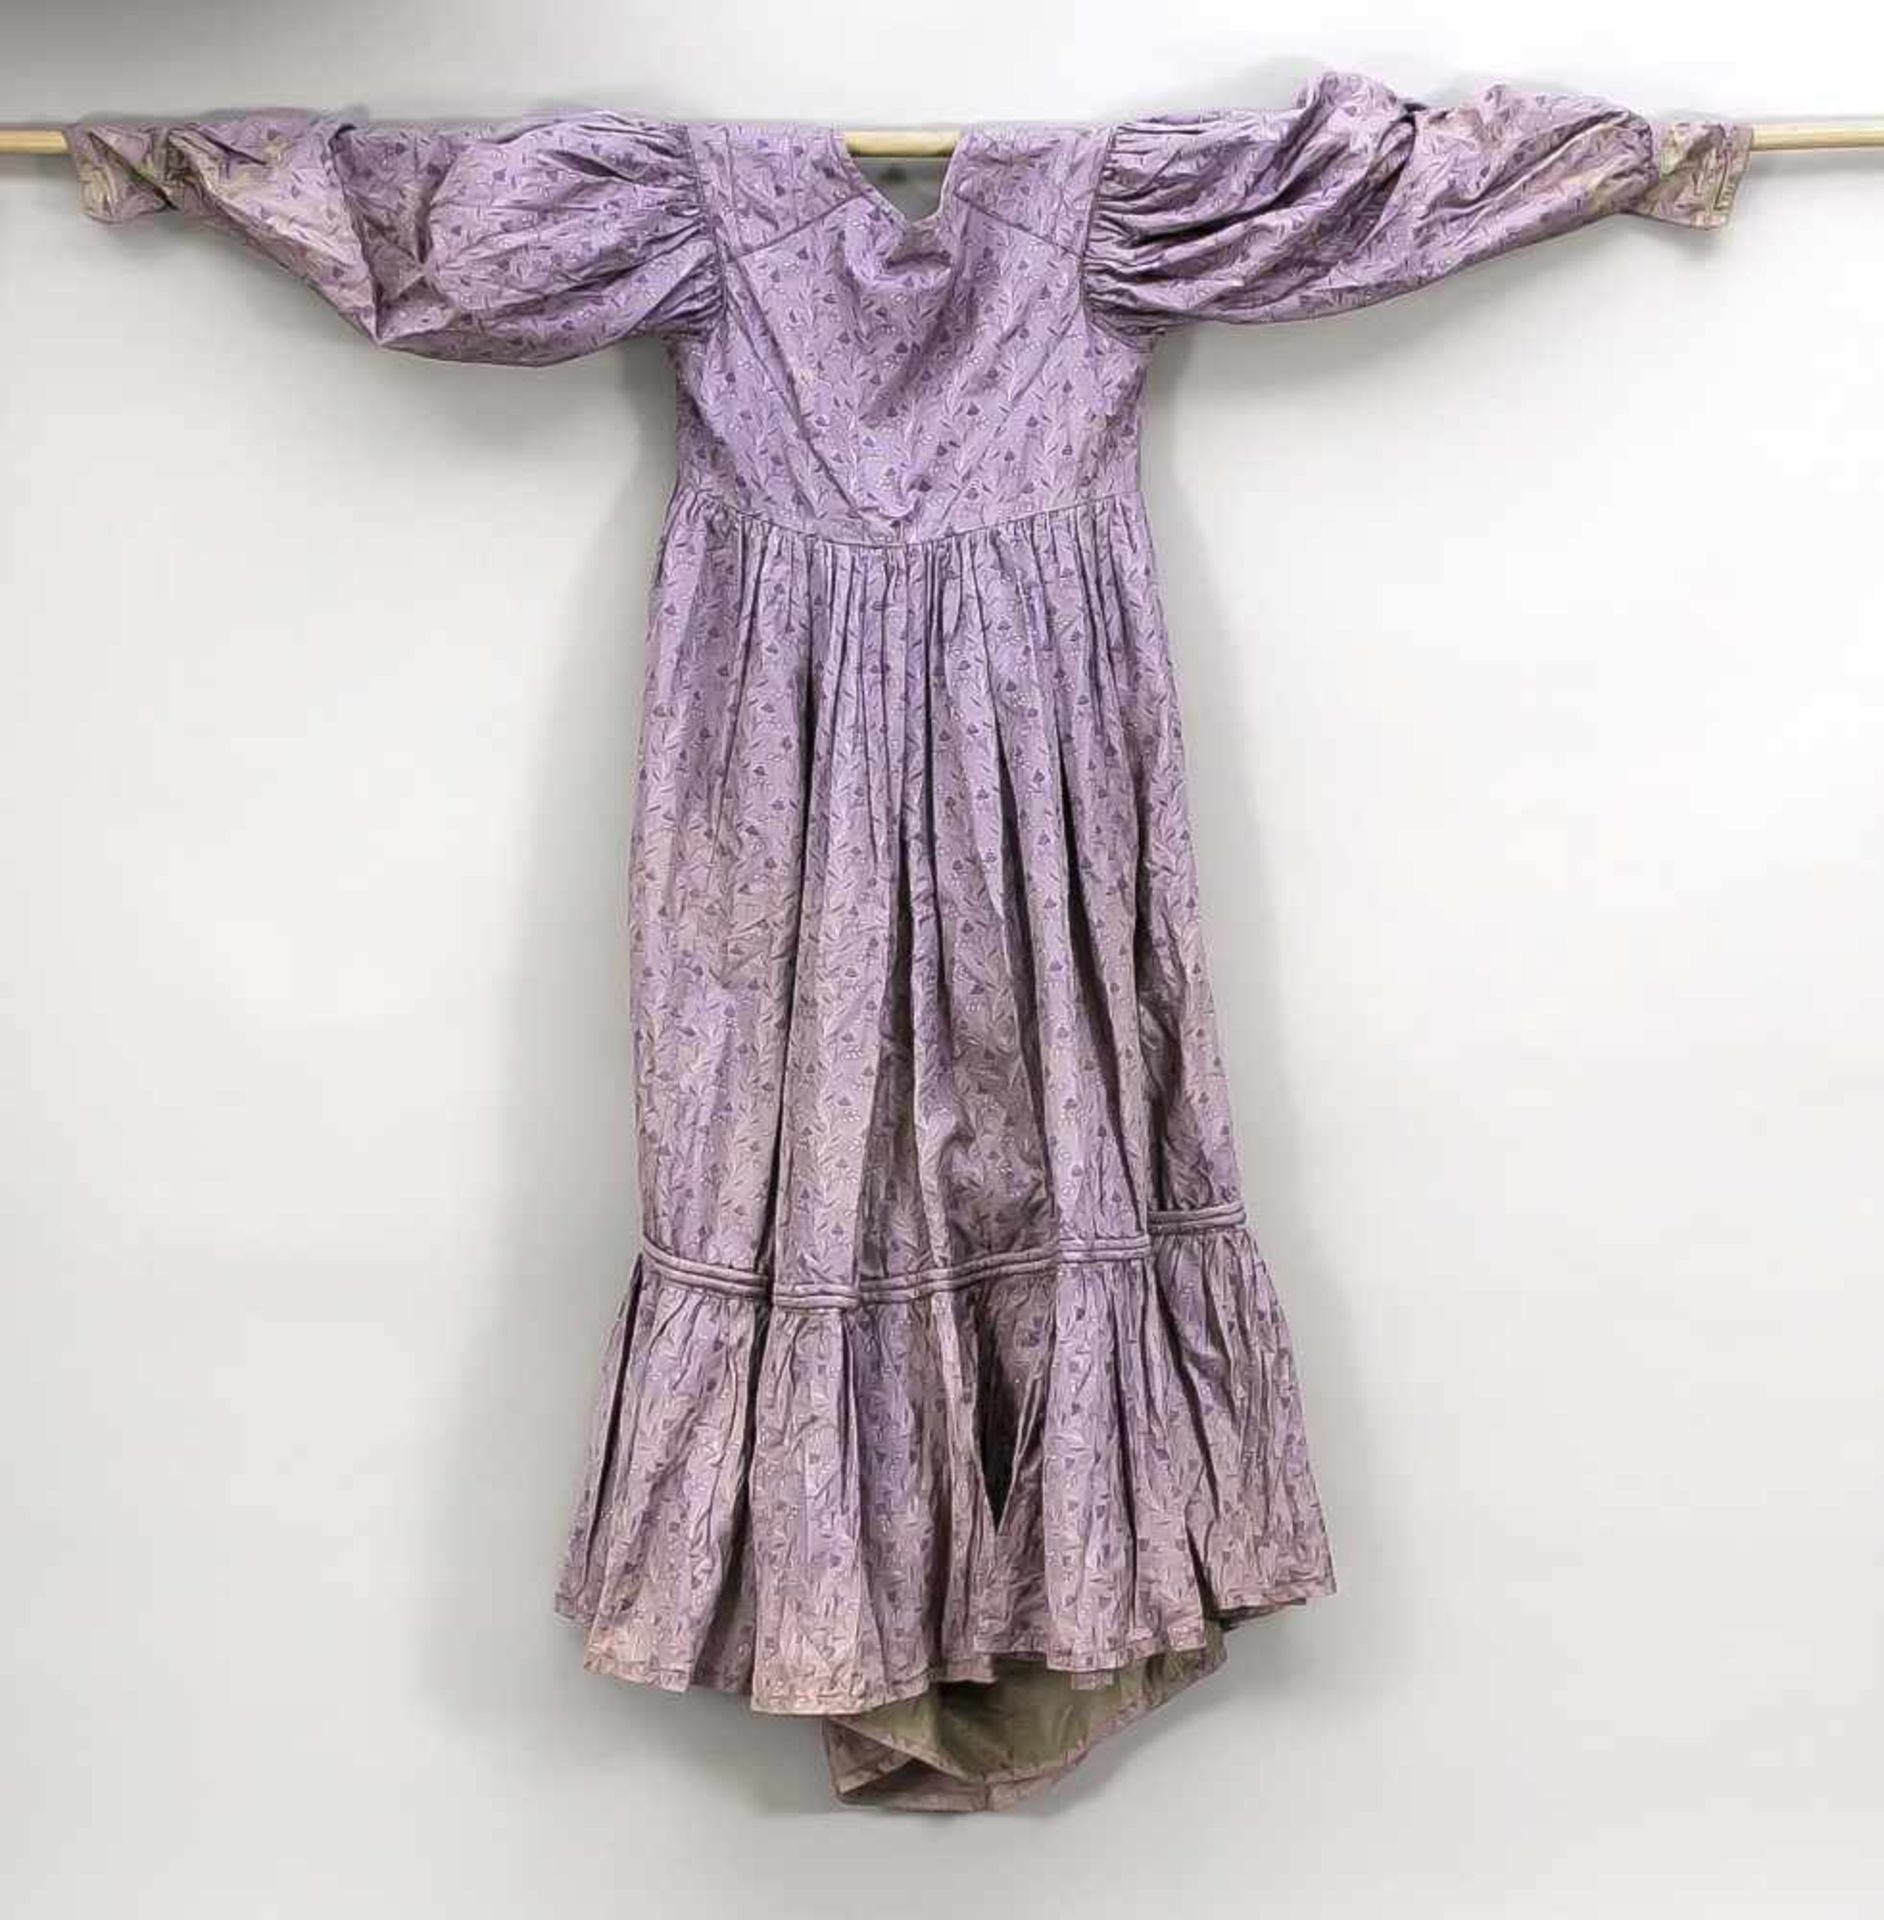 Biedermeierkleid, 19. Jh., aus einem brokatähnlichen Stoff in Violett mit Blumenmuster,